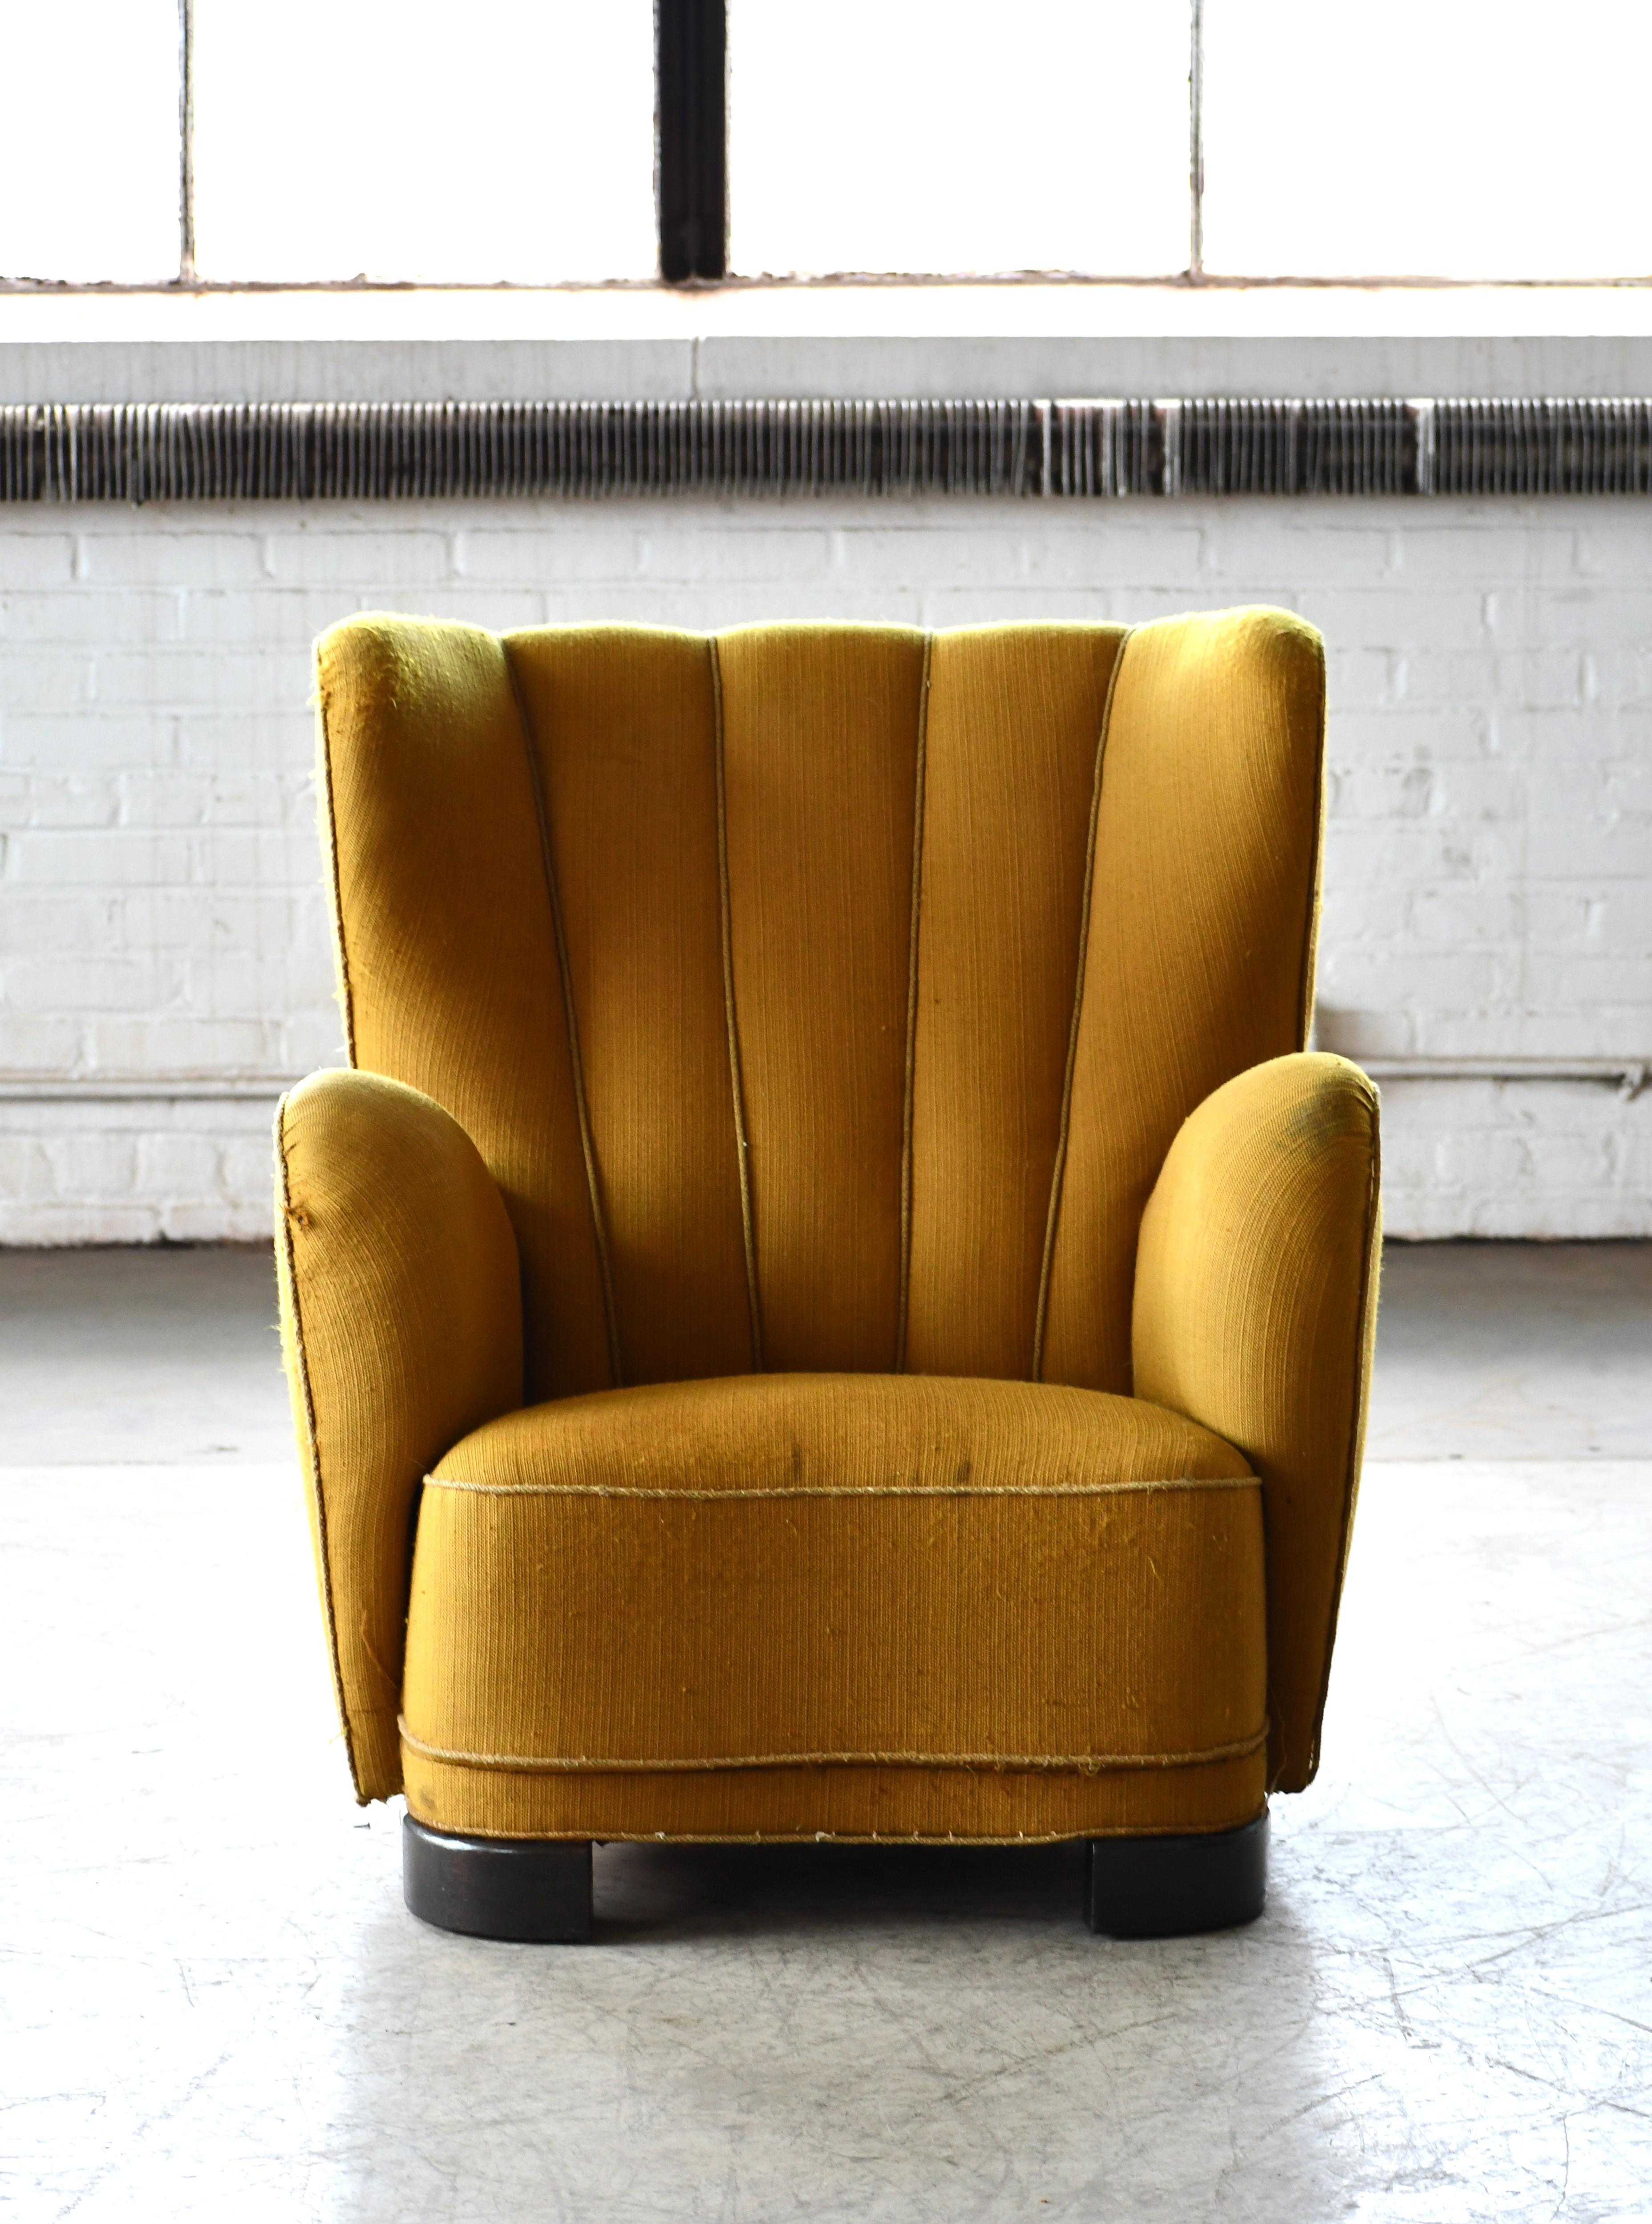 Chaise longue danoise à dossier haut en laine attribuée à Fritz Hansen dans les années 1940. Sublime chaise longue à dossier cannelé fabriquée au Danemark à la fin des années 1930 ou au début des années 1940. Ce modèle de chaise est vu de temps en